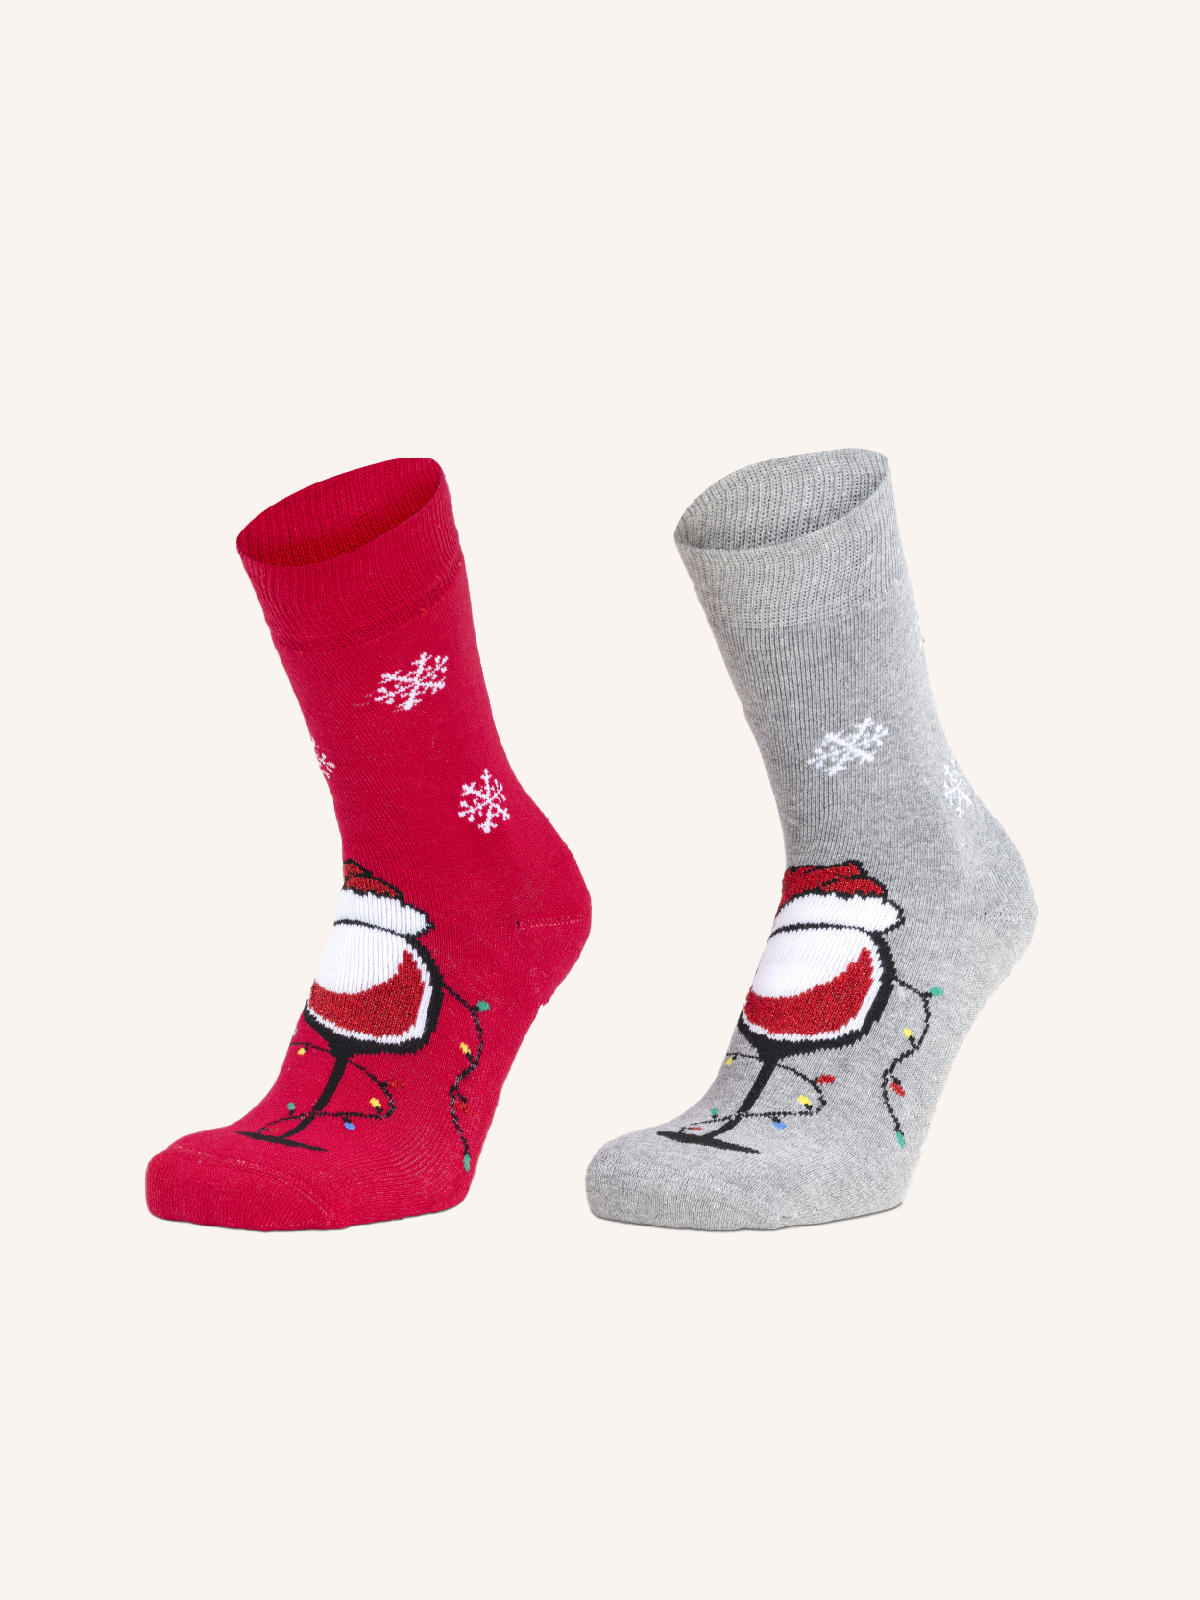 Non-slip Cotton Socks for Women | Christmas Fantasy | Pack of 2 Pairs | Xmas DA